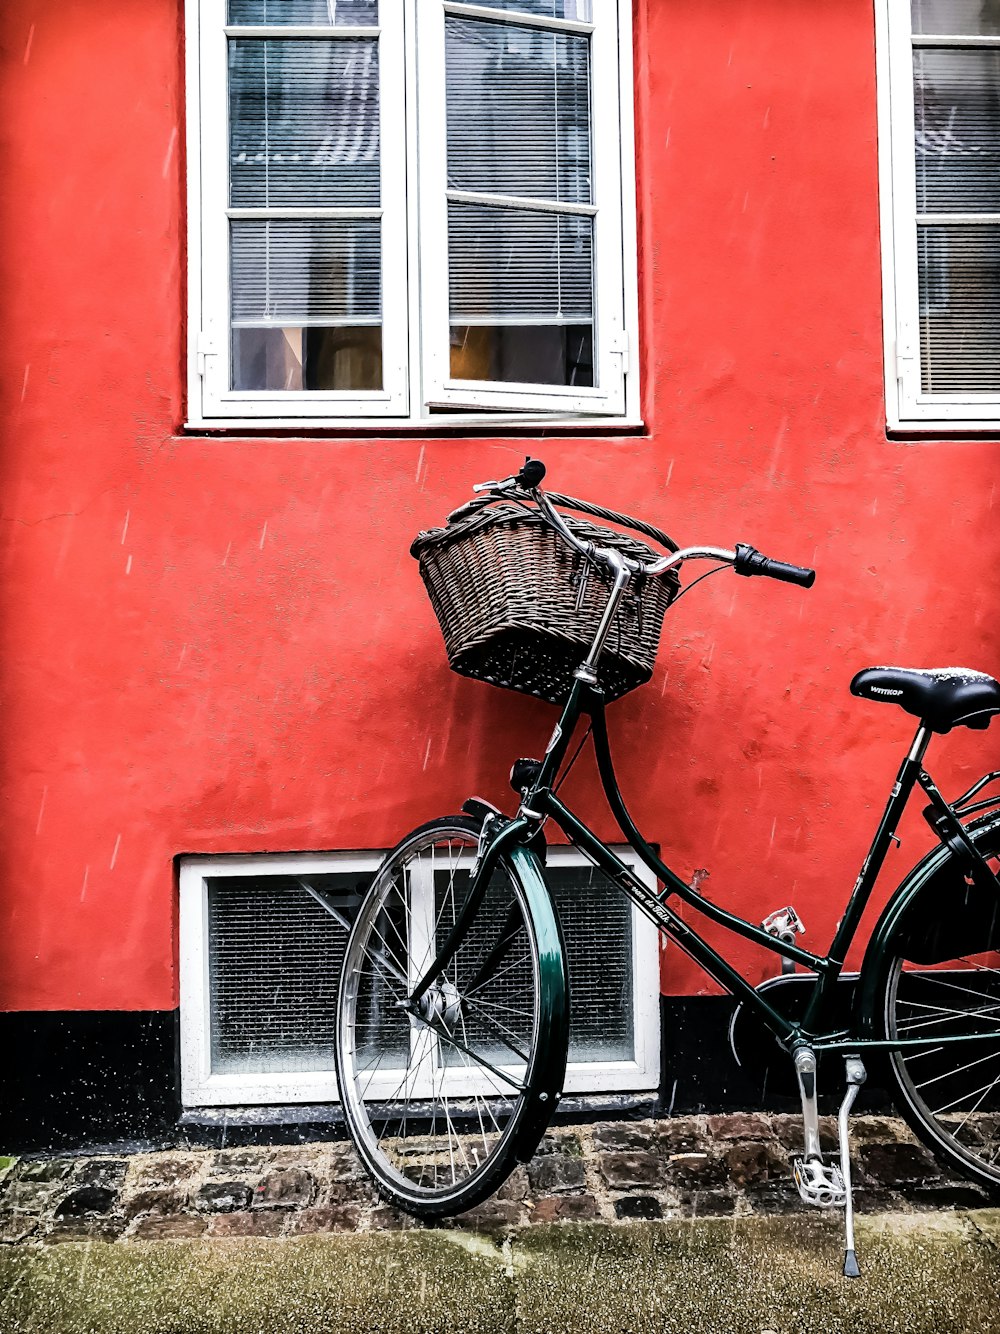 Bicicleta de crucero negra junto a la pared roja